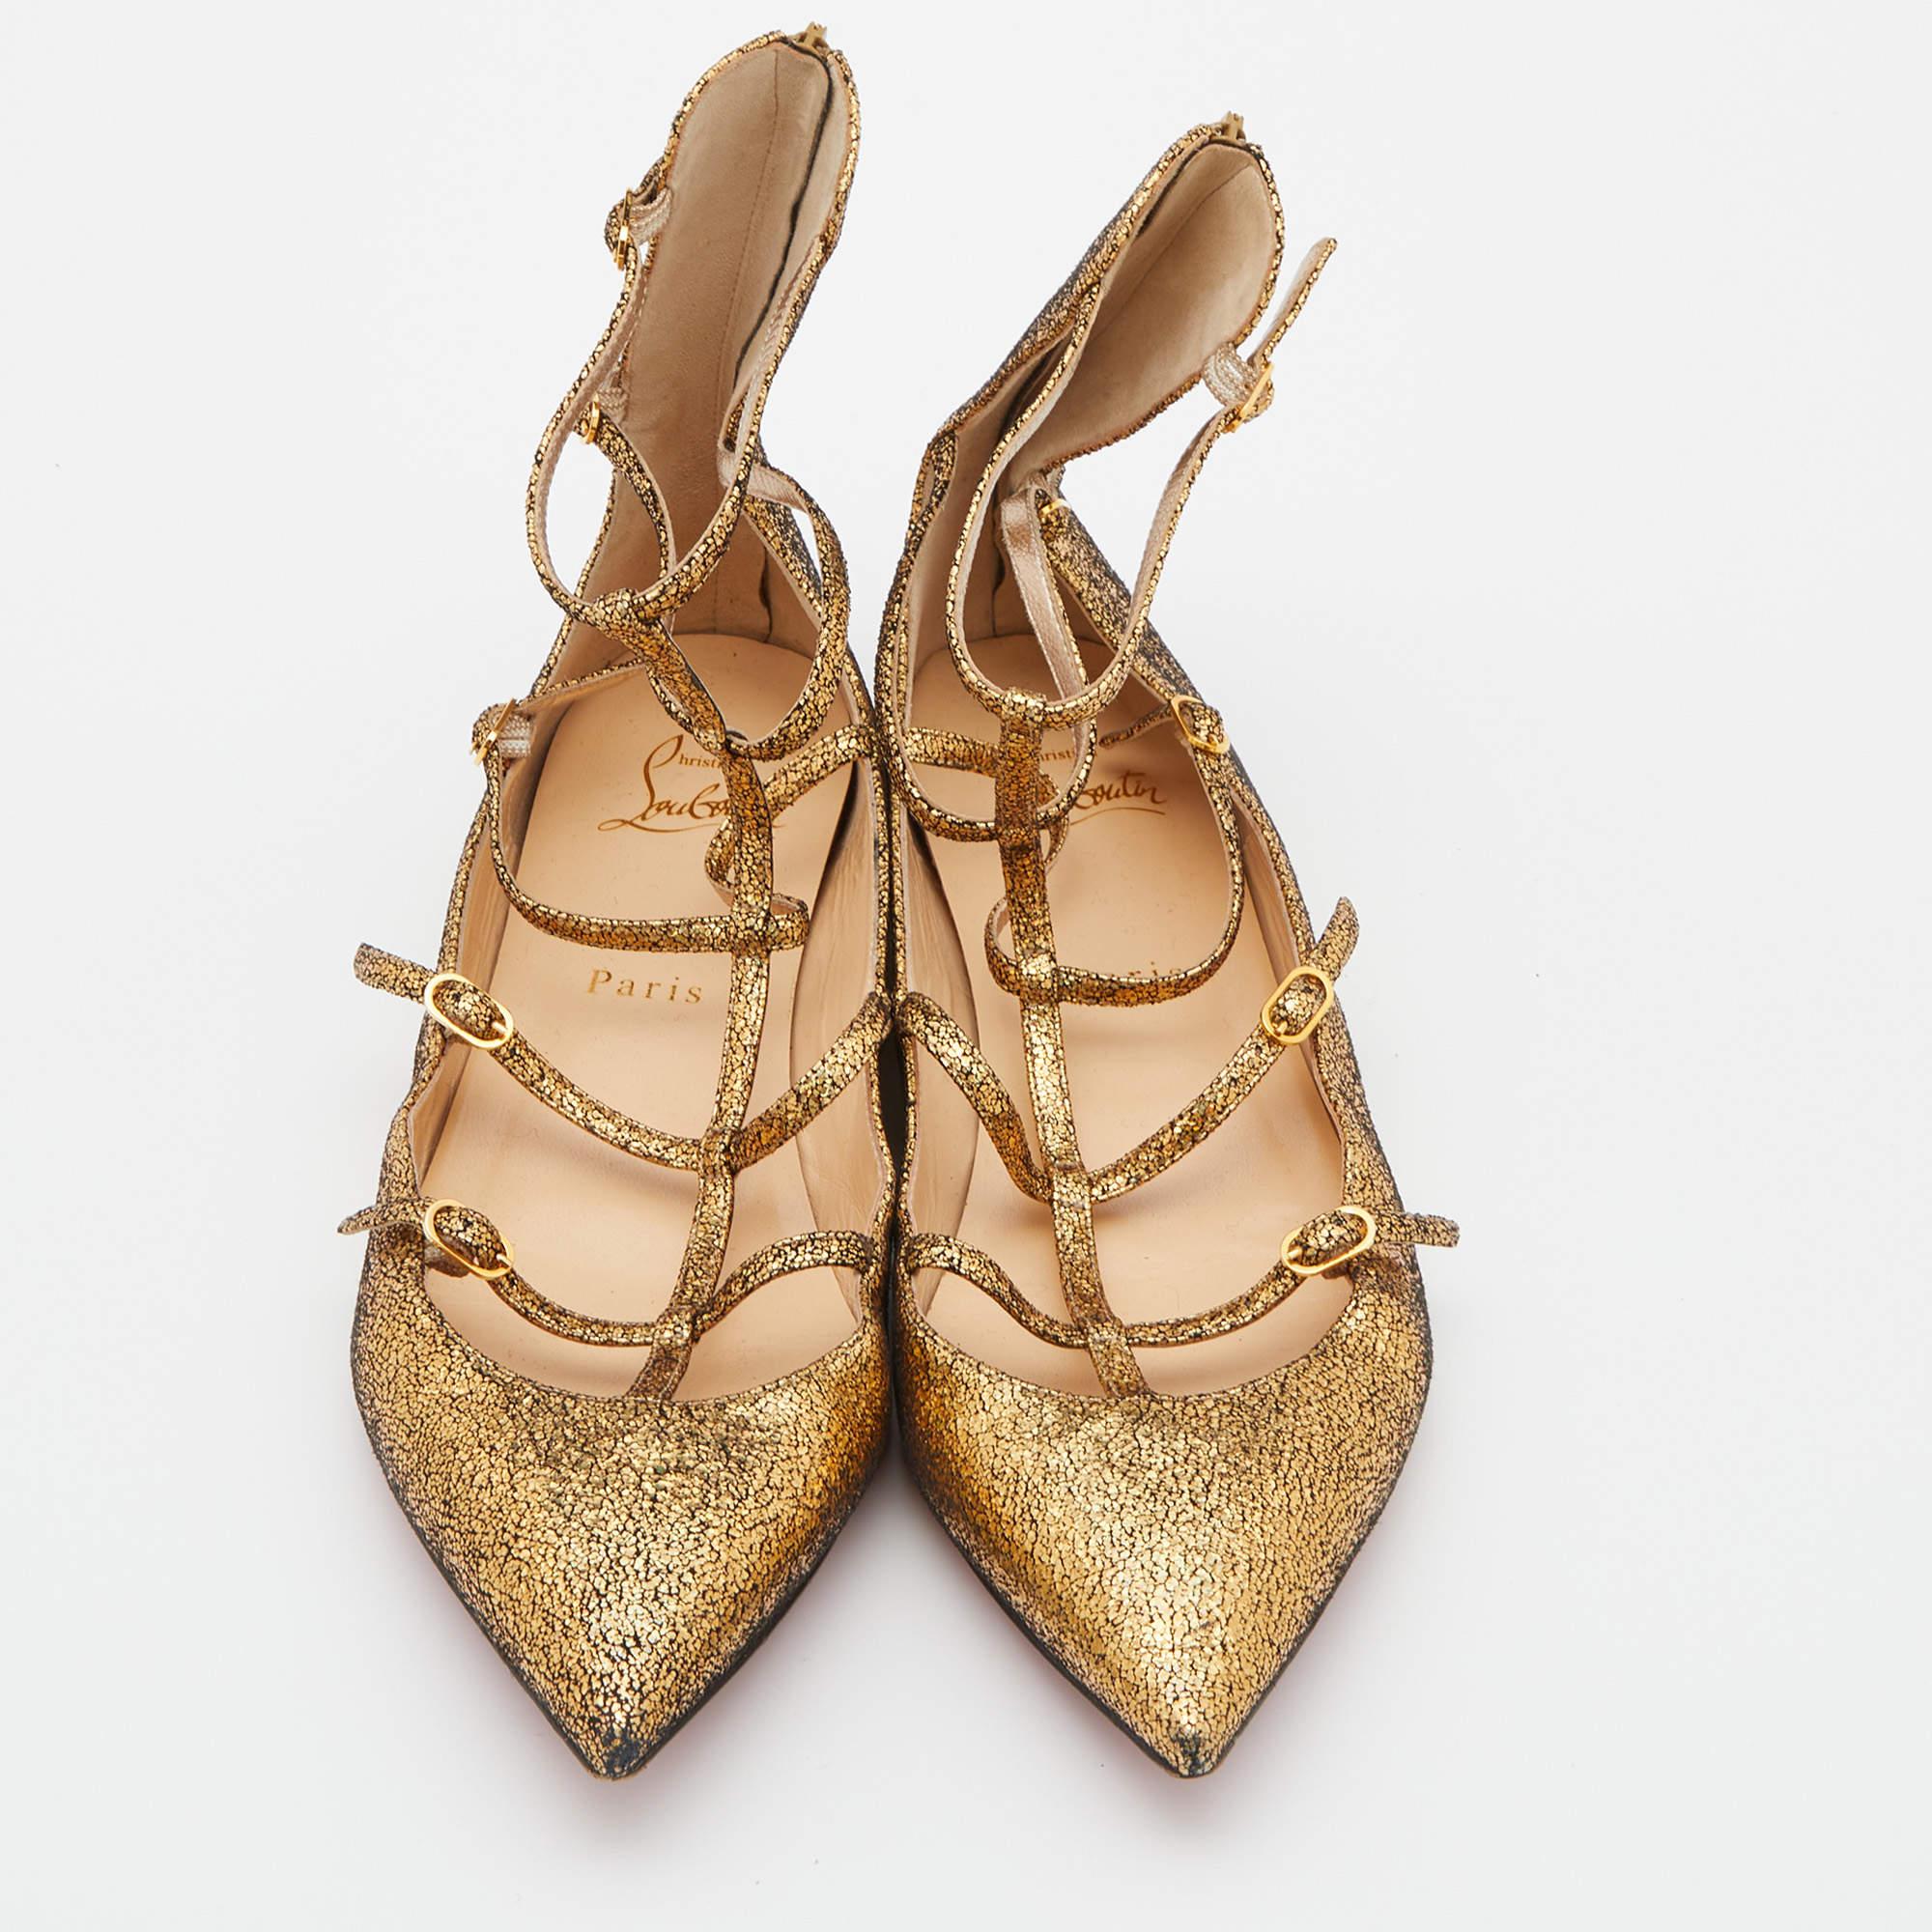 Christian Louboutin - Chaussures de ballet en cuir doré à paillettes « Muse Cage », taille 39
